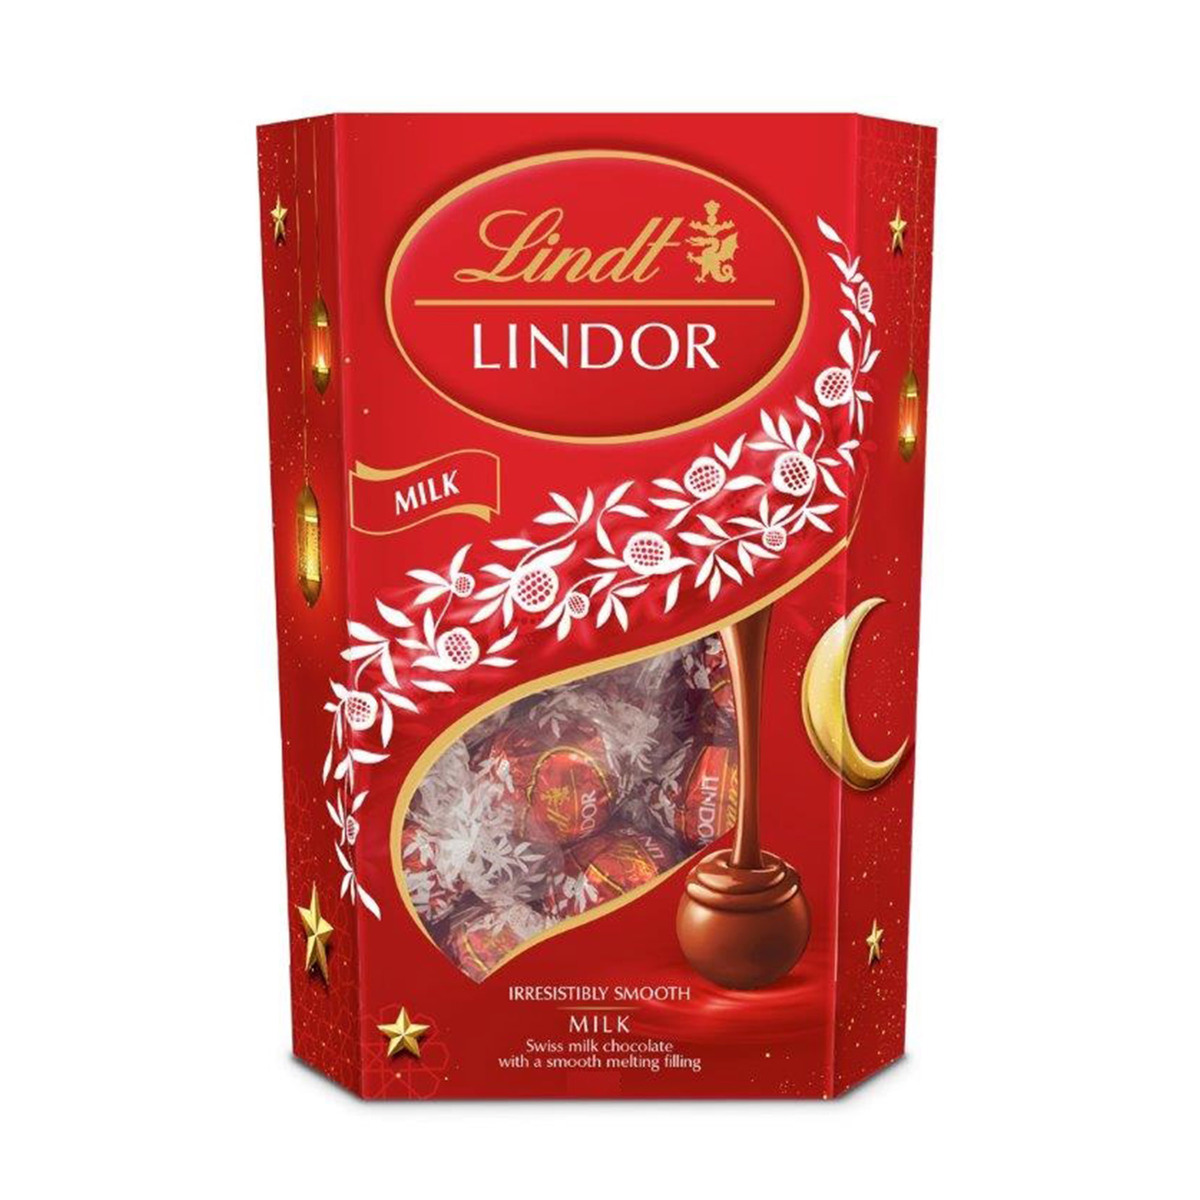 Buy Lindt Lindor Milk Chocolate 200g Online Lulu Hypermarket Uae 6262